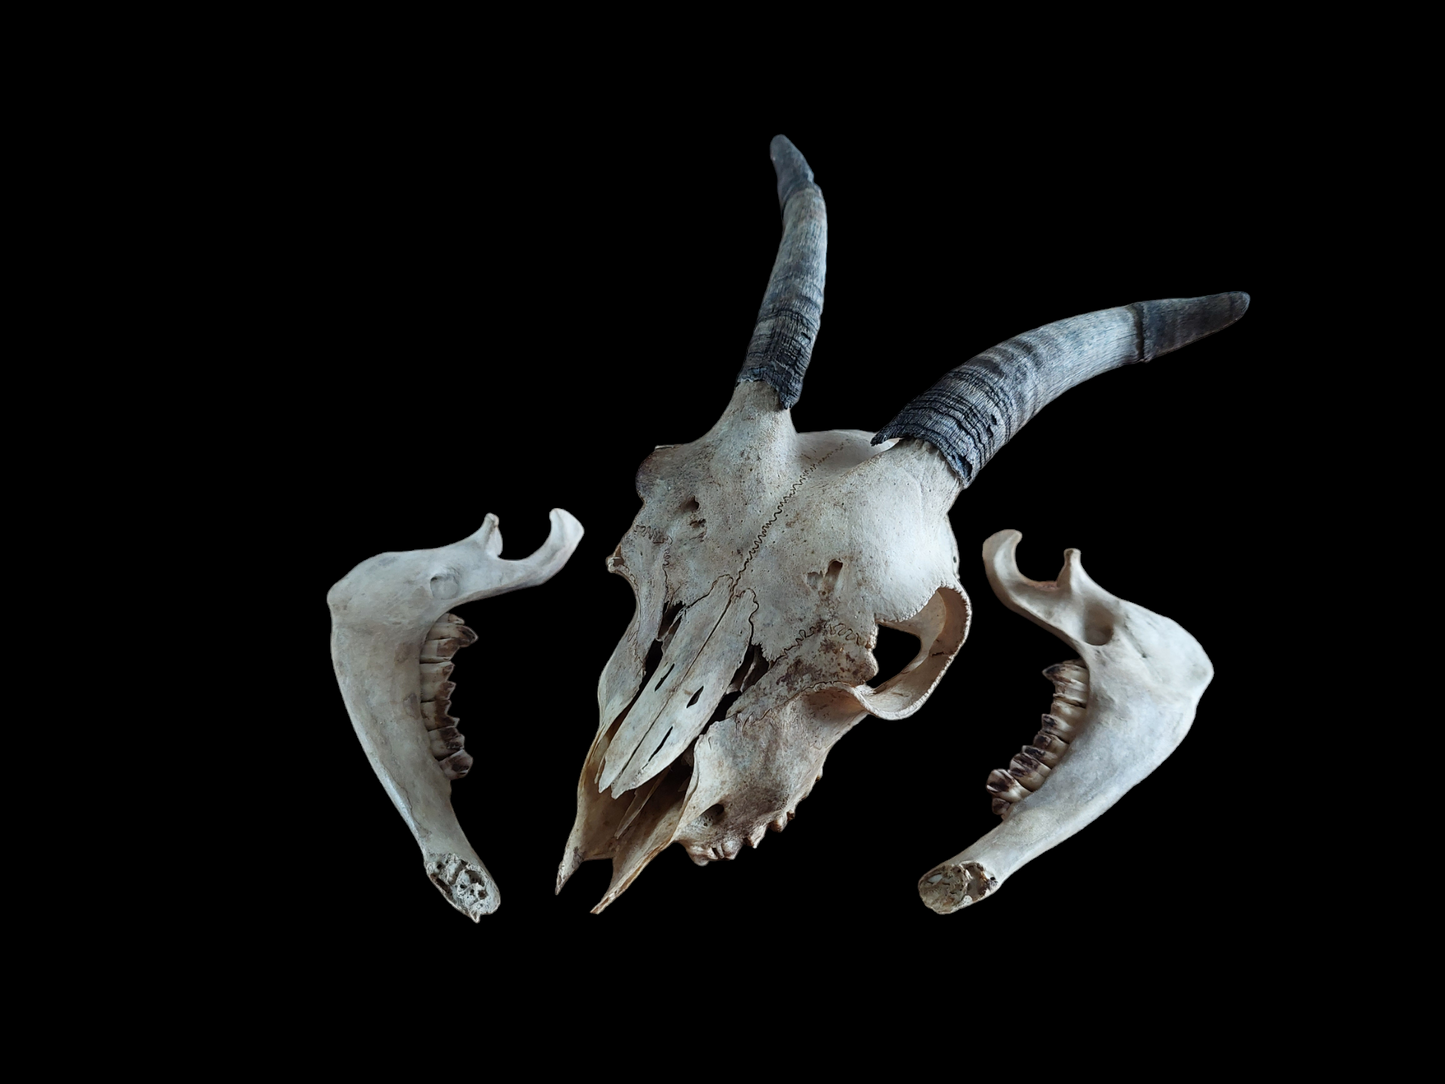 Goat skull #1